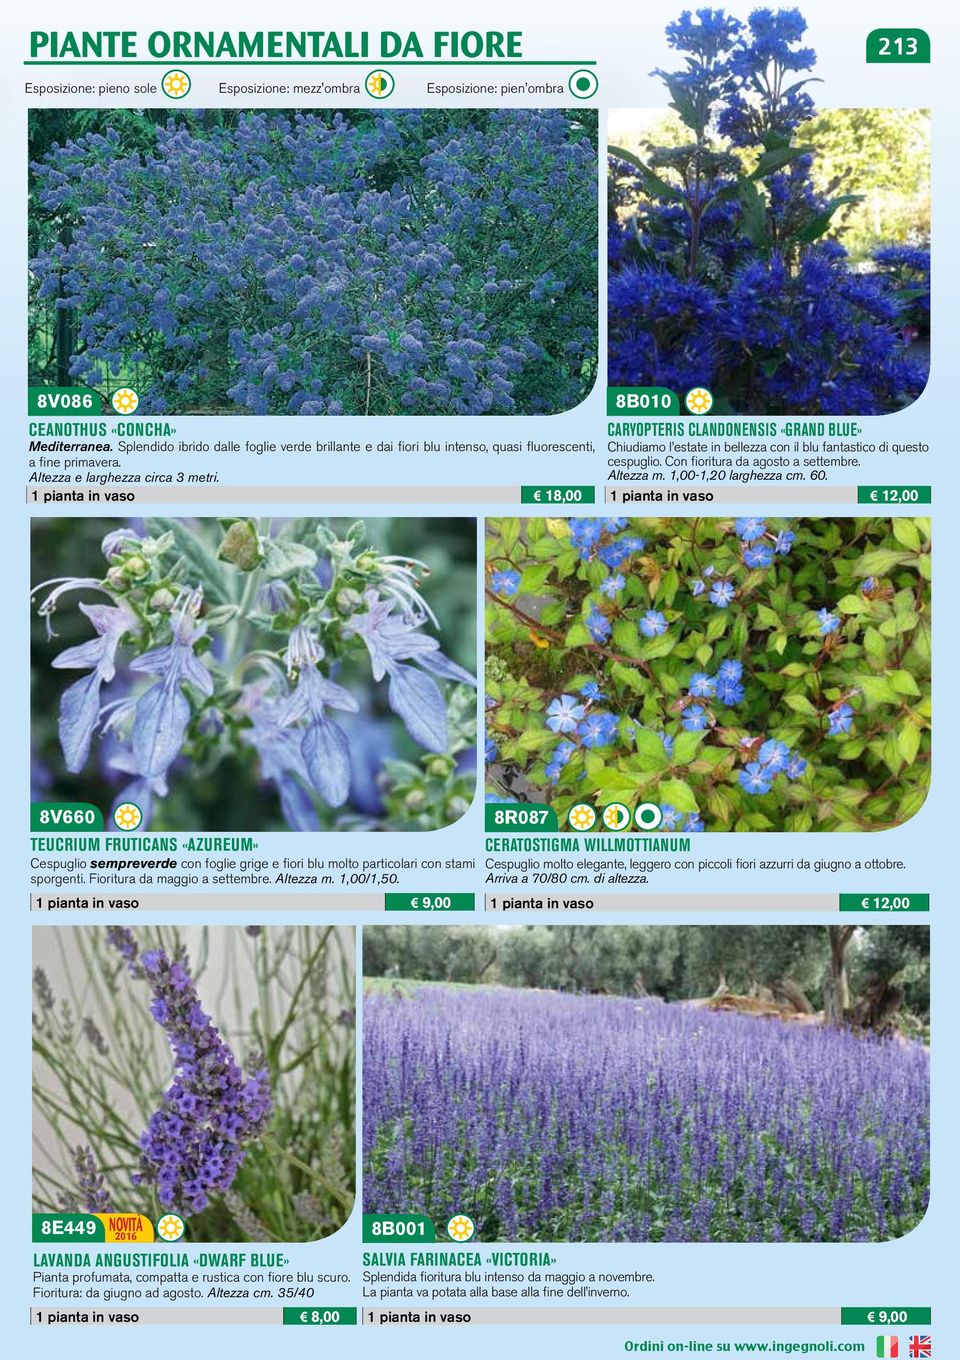 1 pianta in vaso 18,00 8B010 CARYOPTERIS CLANDONENSIS «GRAND BLUE» Chiudiamo l estate in bellezza con il blu fantastico di questo cespuglio. Con fioritura da agosto a settembre. Altezza m.